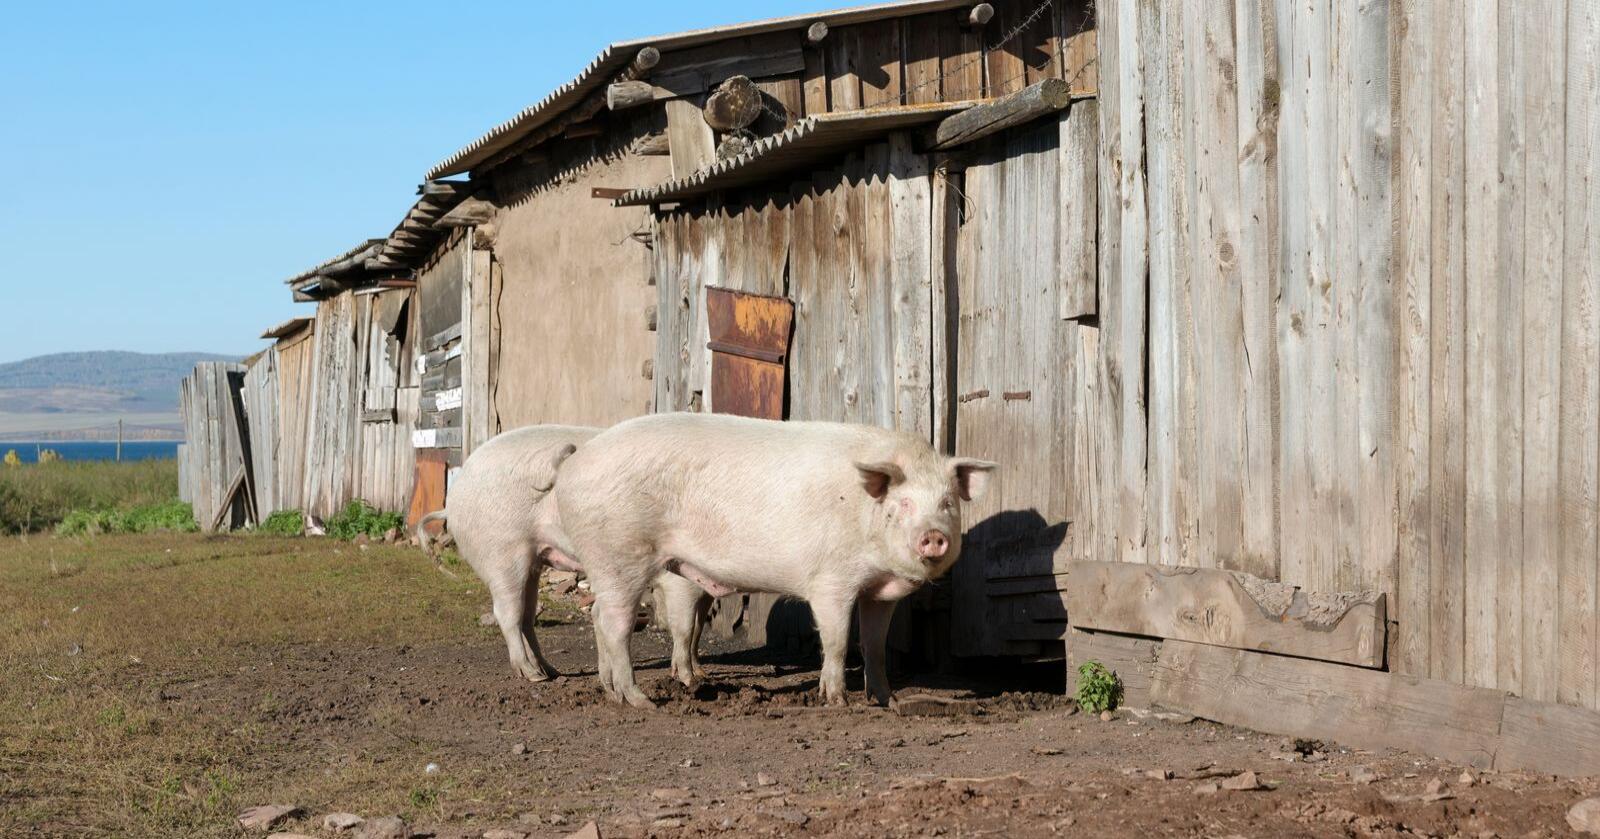 Det har så langt i år vært 80 tilfeller av svinepest i Russland, men først nå er det smitte i det industrielle landbruket. Illustrasjonsfoto: Mostphotos